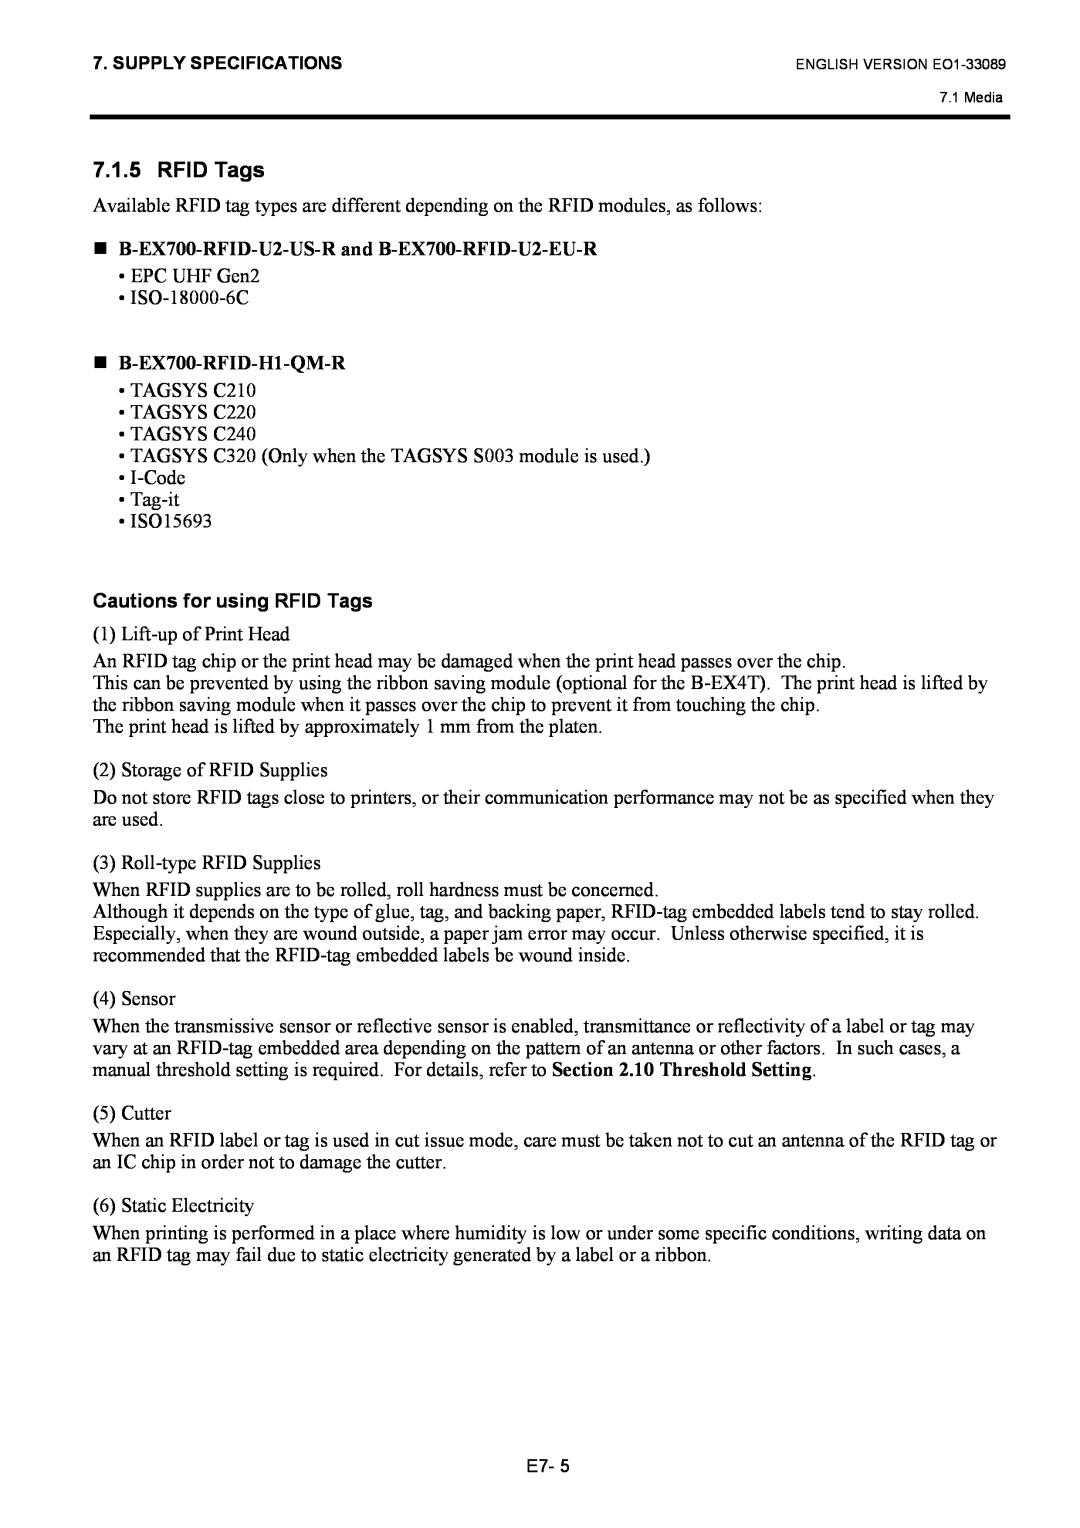 Toshiba B-EX4T1 manual Cautions for using RFID Tags 